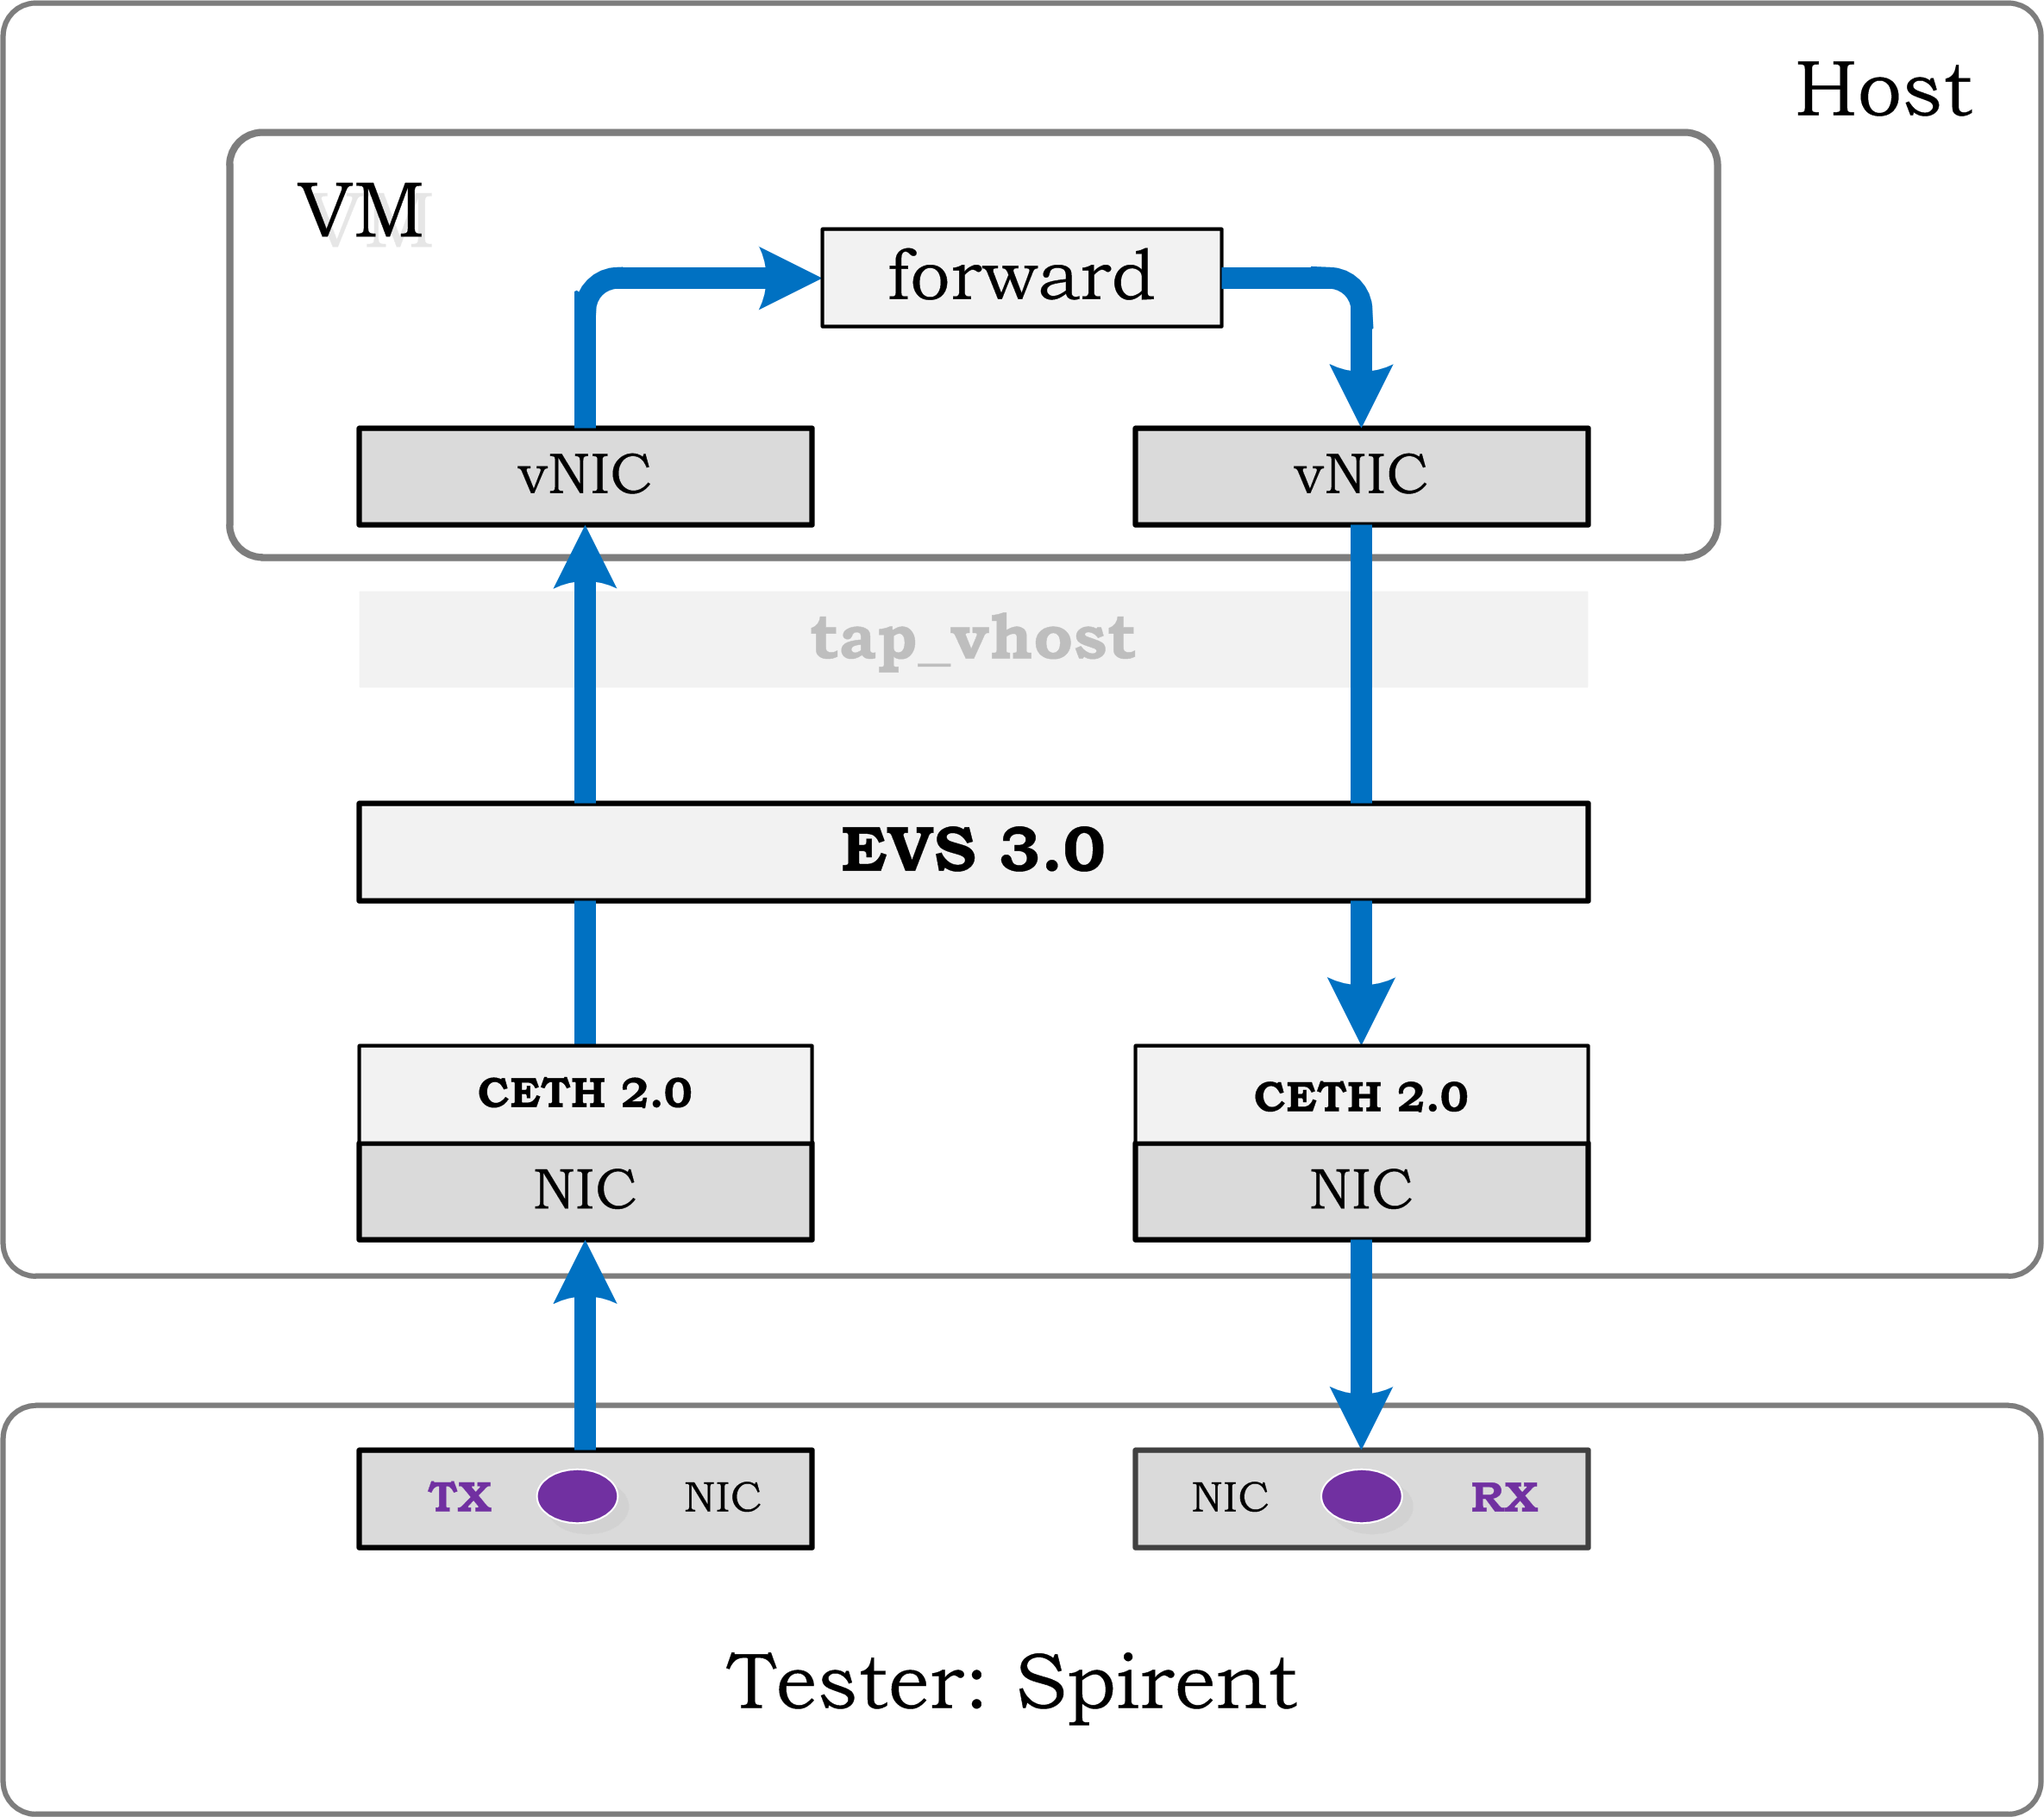 vstf/vstf/controller/res/spirent/Tn-1v.gif